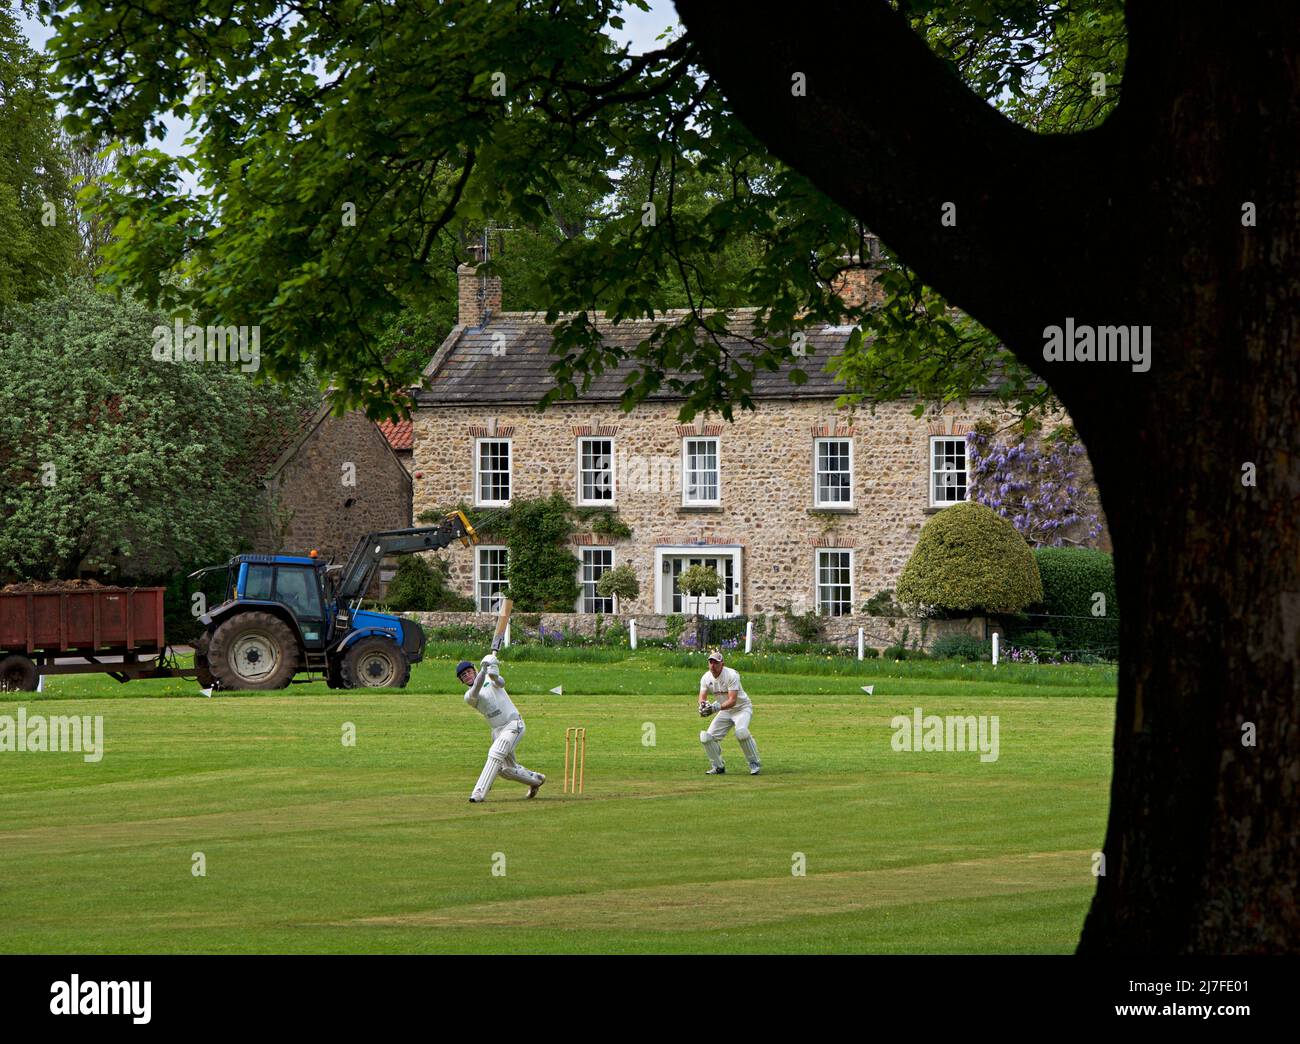 Match de cricket en cours dans le village de Crakehall, North Yorkshire, Angleterre Banque D'Images